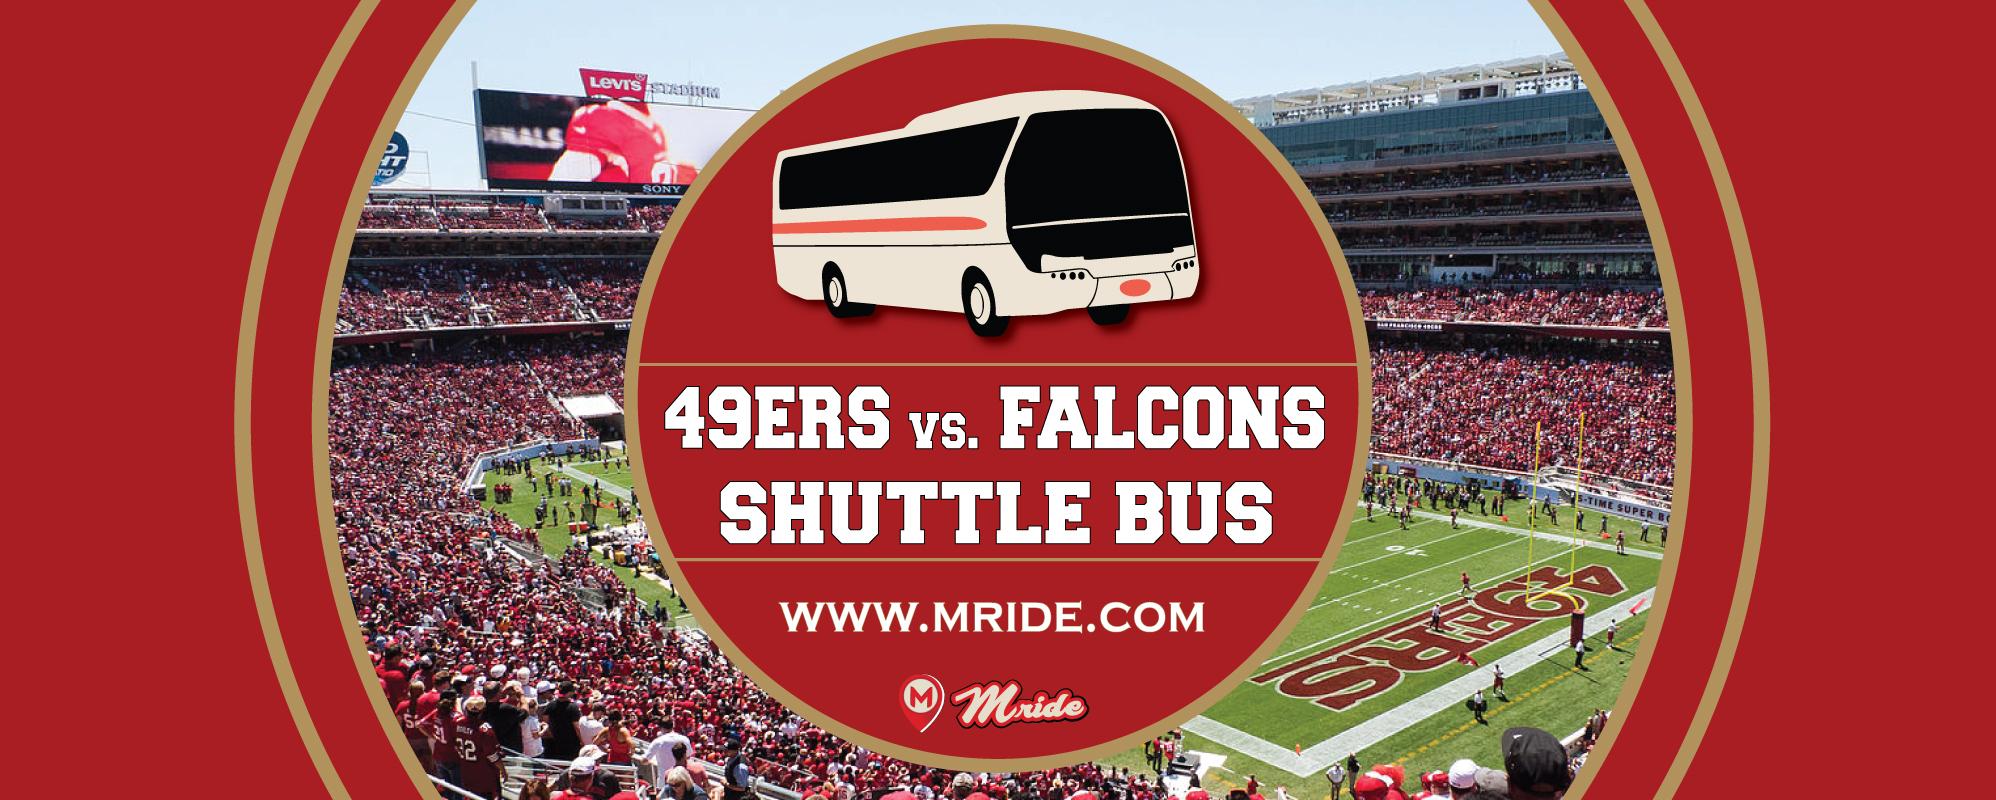 Niners vs. Falcons Levi’s Stadium Shuttle Bus